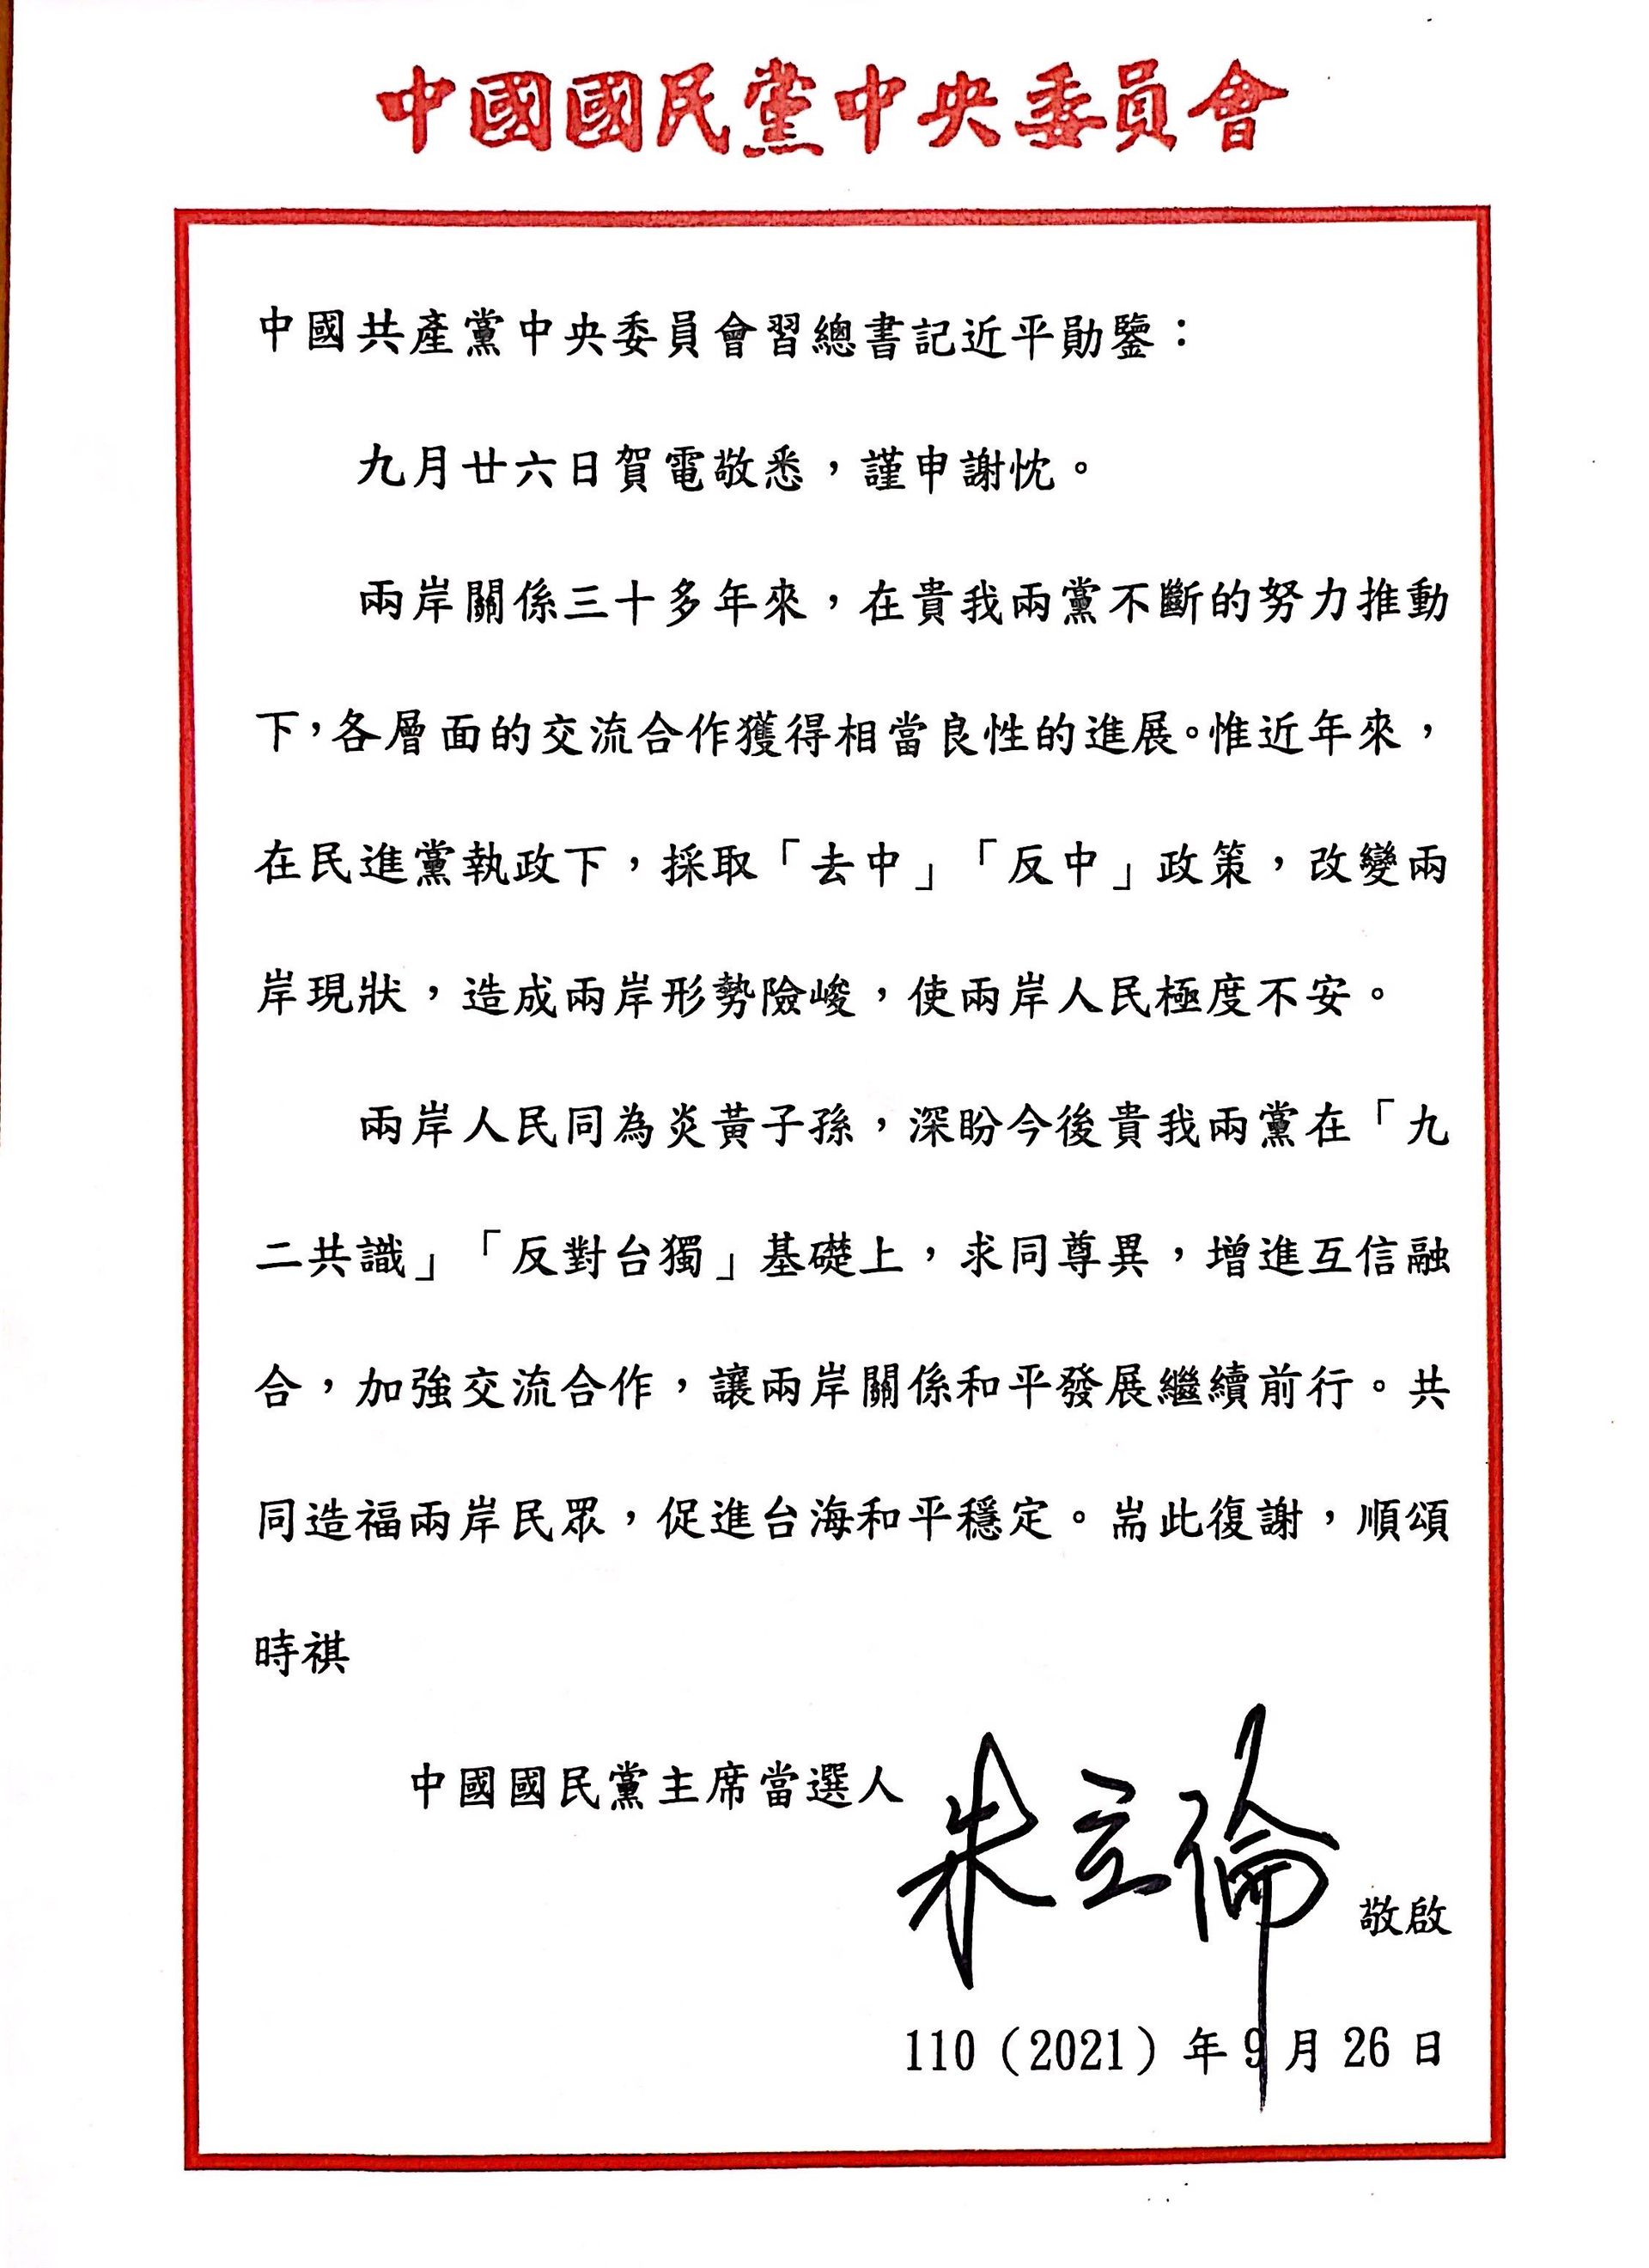 朱立伦表示，他是于9月26日上午9时收到习近平贺电，并以“中国国民党主席当选人”身份回复习近平贺电。（国民党供图）